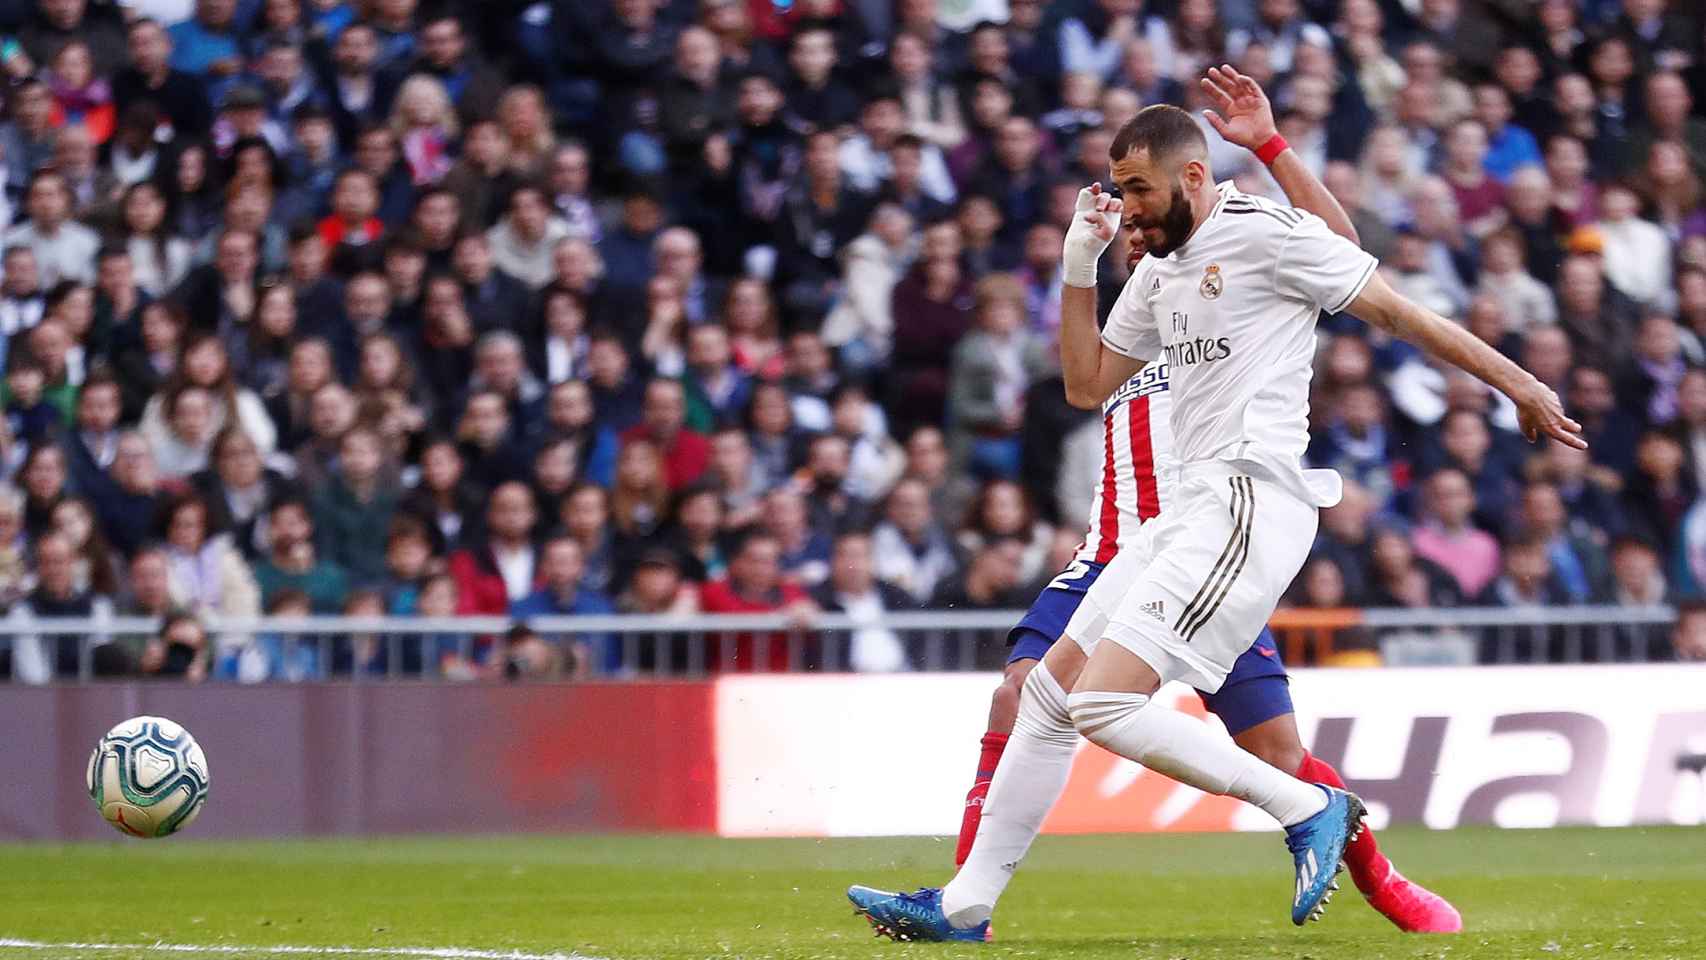 Benzema remata un pase de Mendy y marca el primer gol del Madrid en el derbi